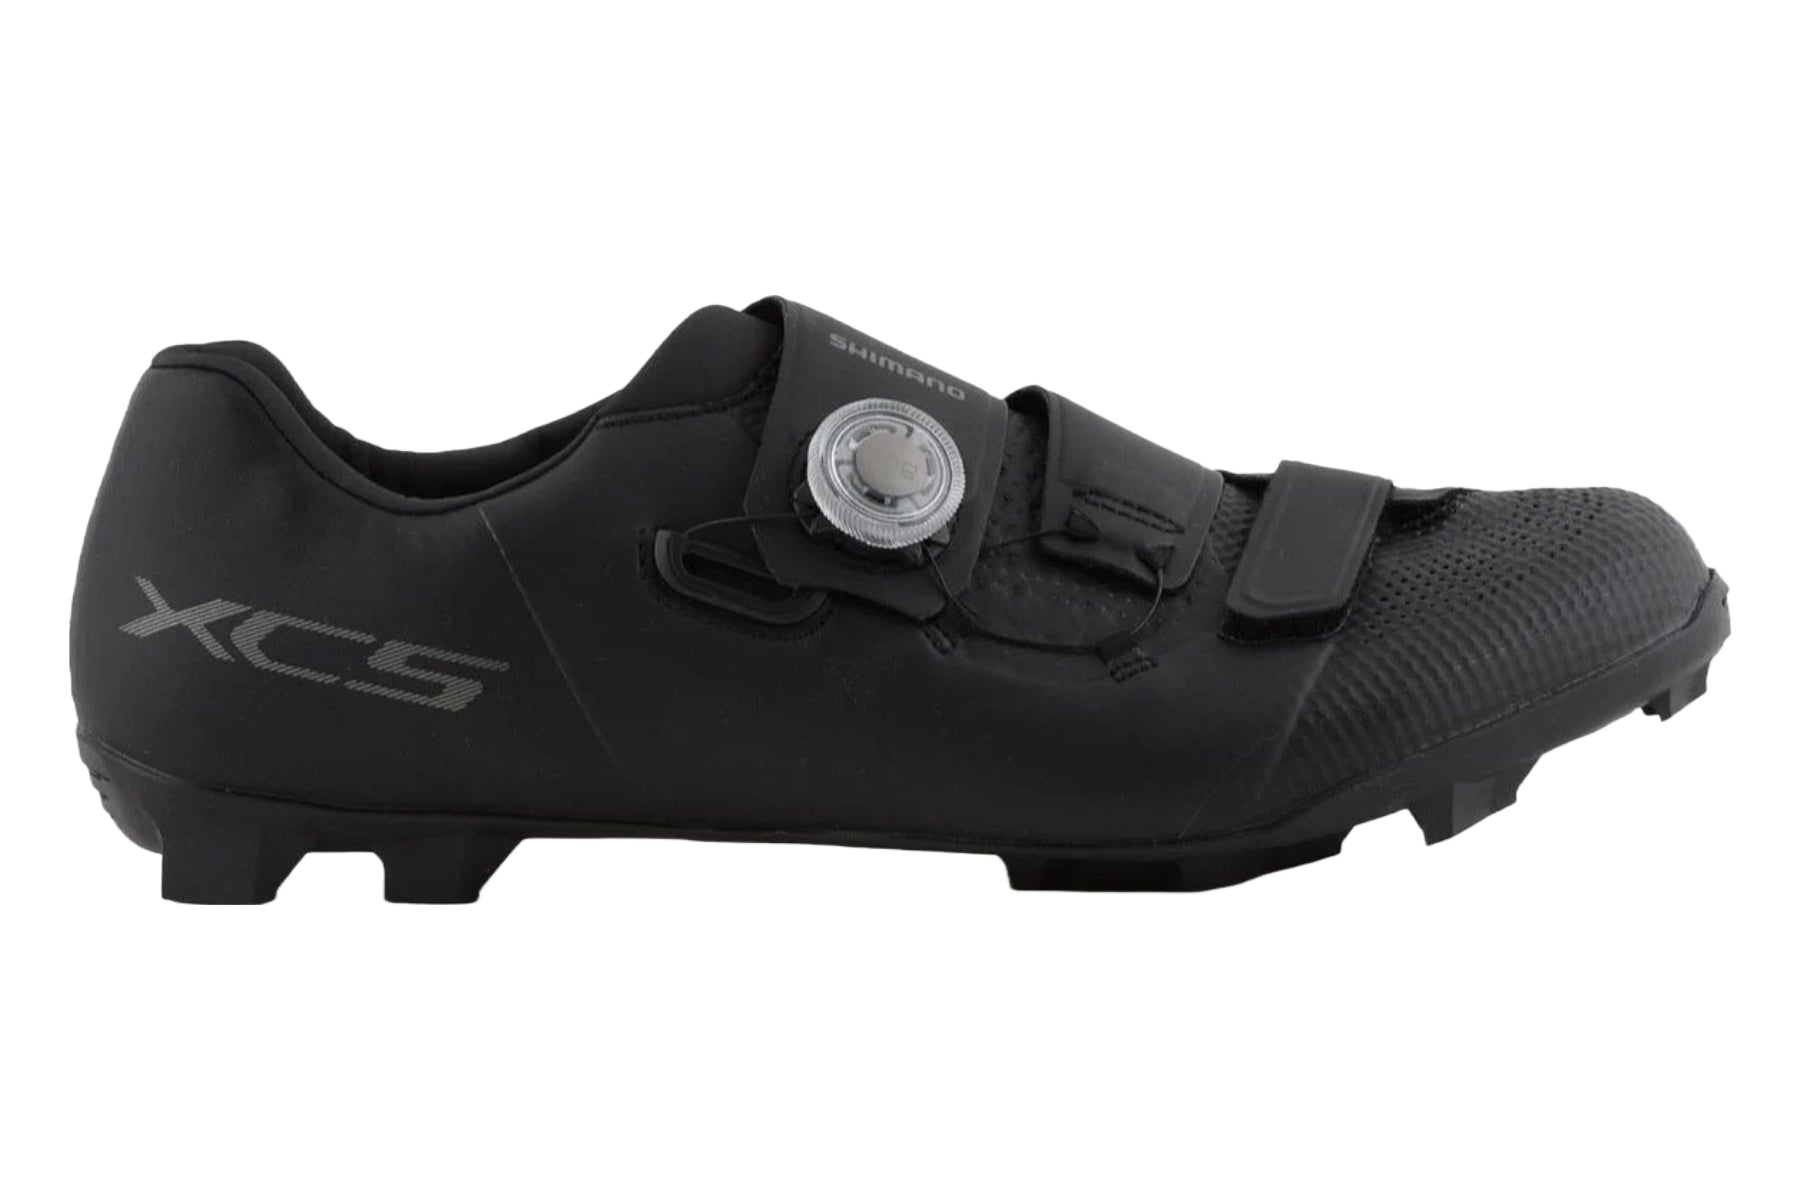 Photos - Cycling Shoes Shimano XC5 Mountain Shoes - Black - 44 ESHXC502MCL01S44000 